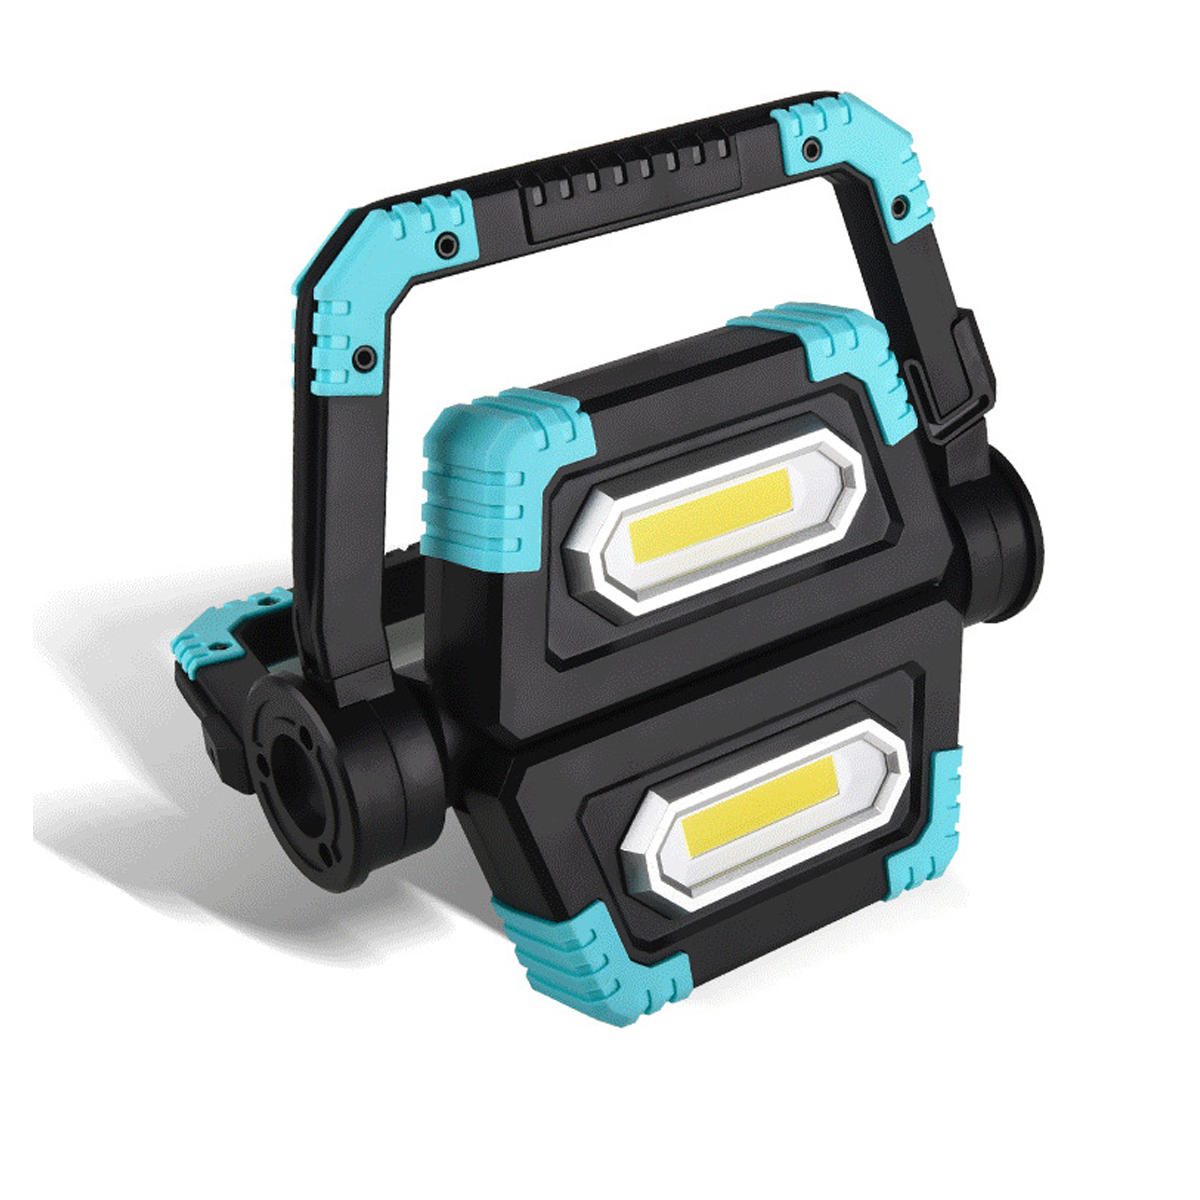 Luz de trabajo LED COB recargable por USB de 800LM y 30W, resistente al agua y apta para camping